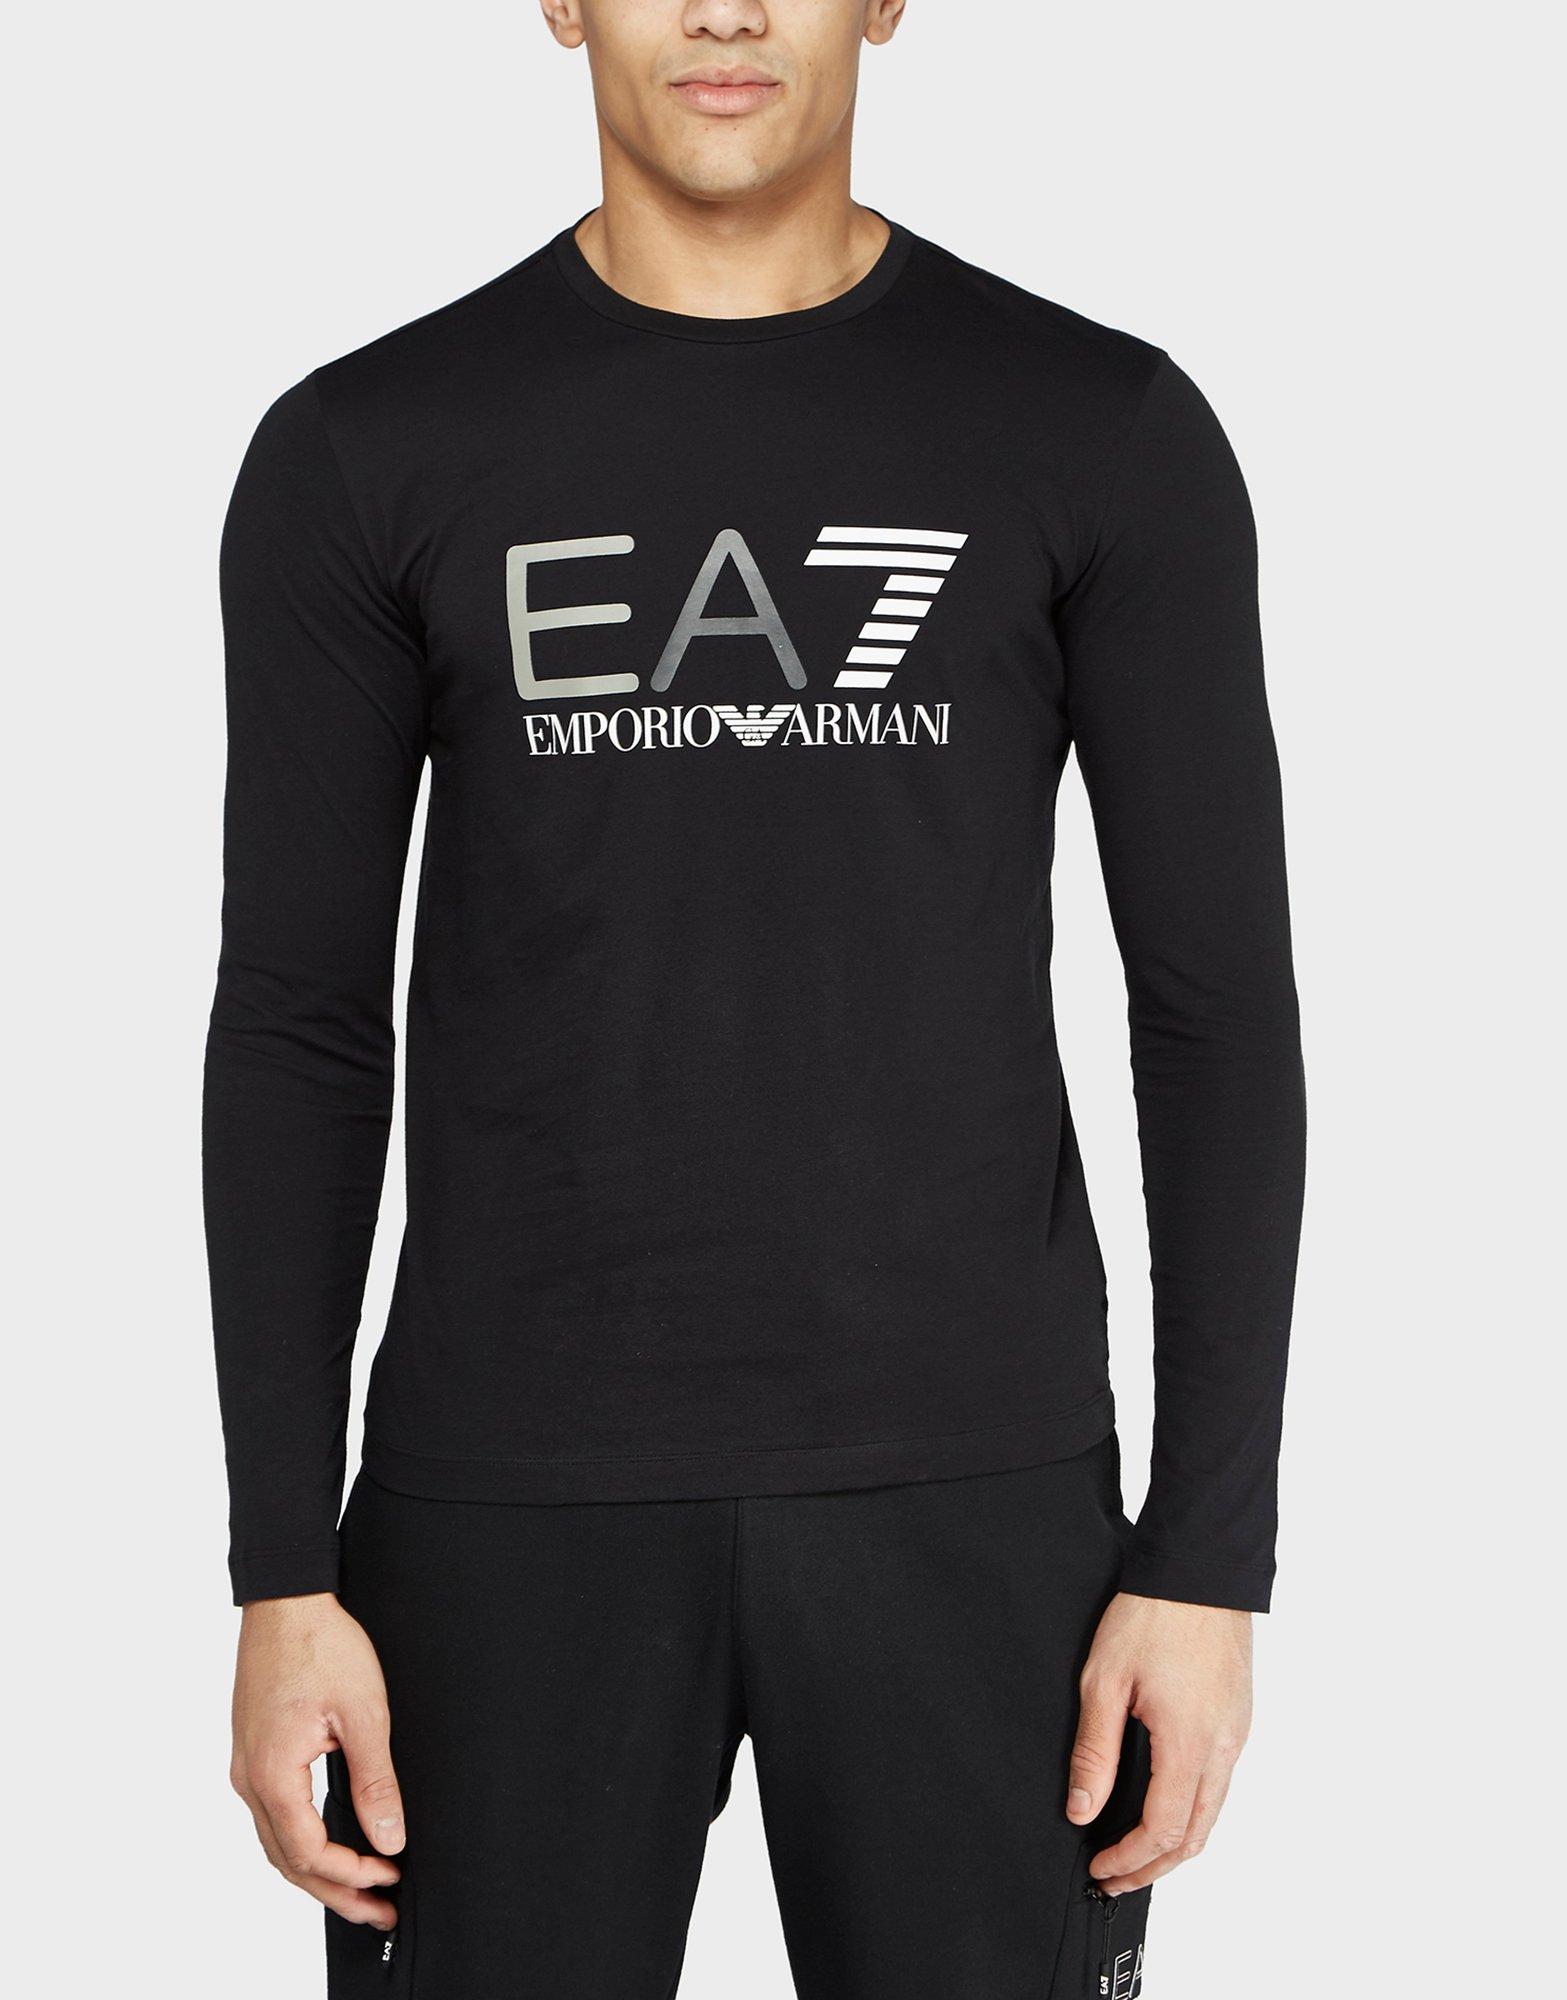 Emporio Armani EA7 Long-Sleeve T-Shirt 